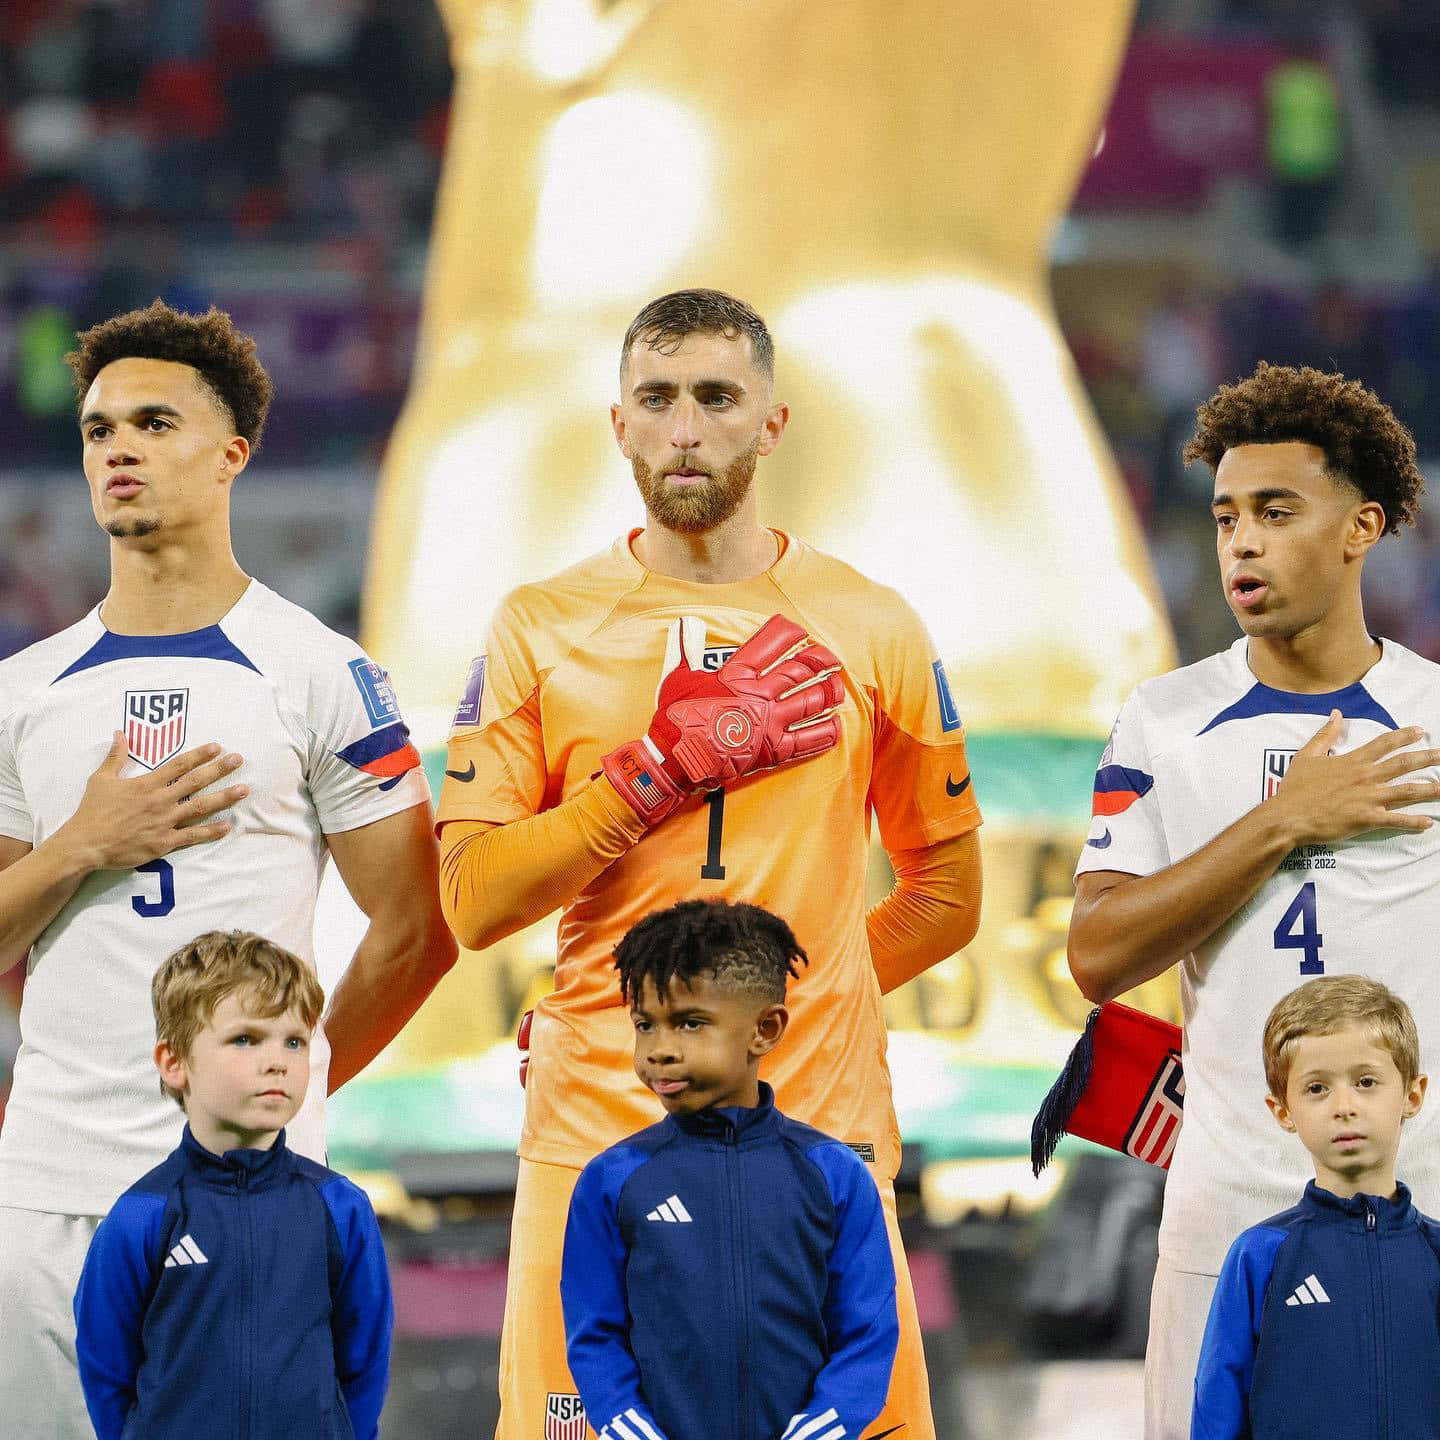 Nationalsang USA fodboldhold med børn Wallpaper